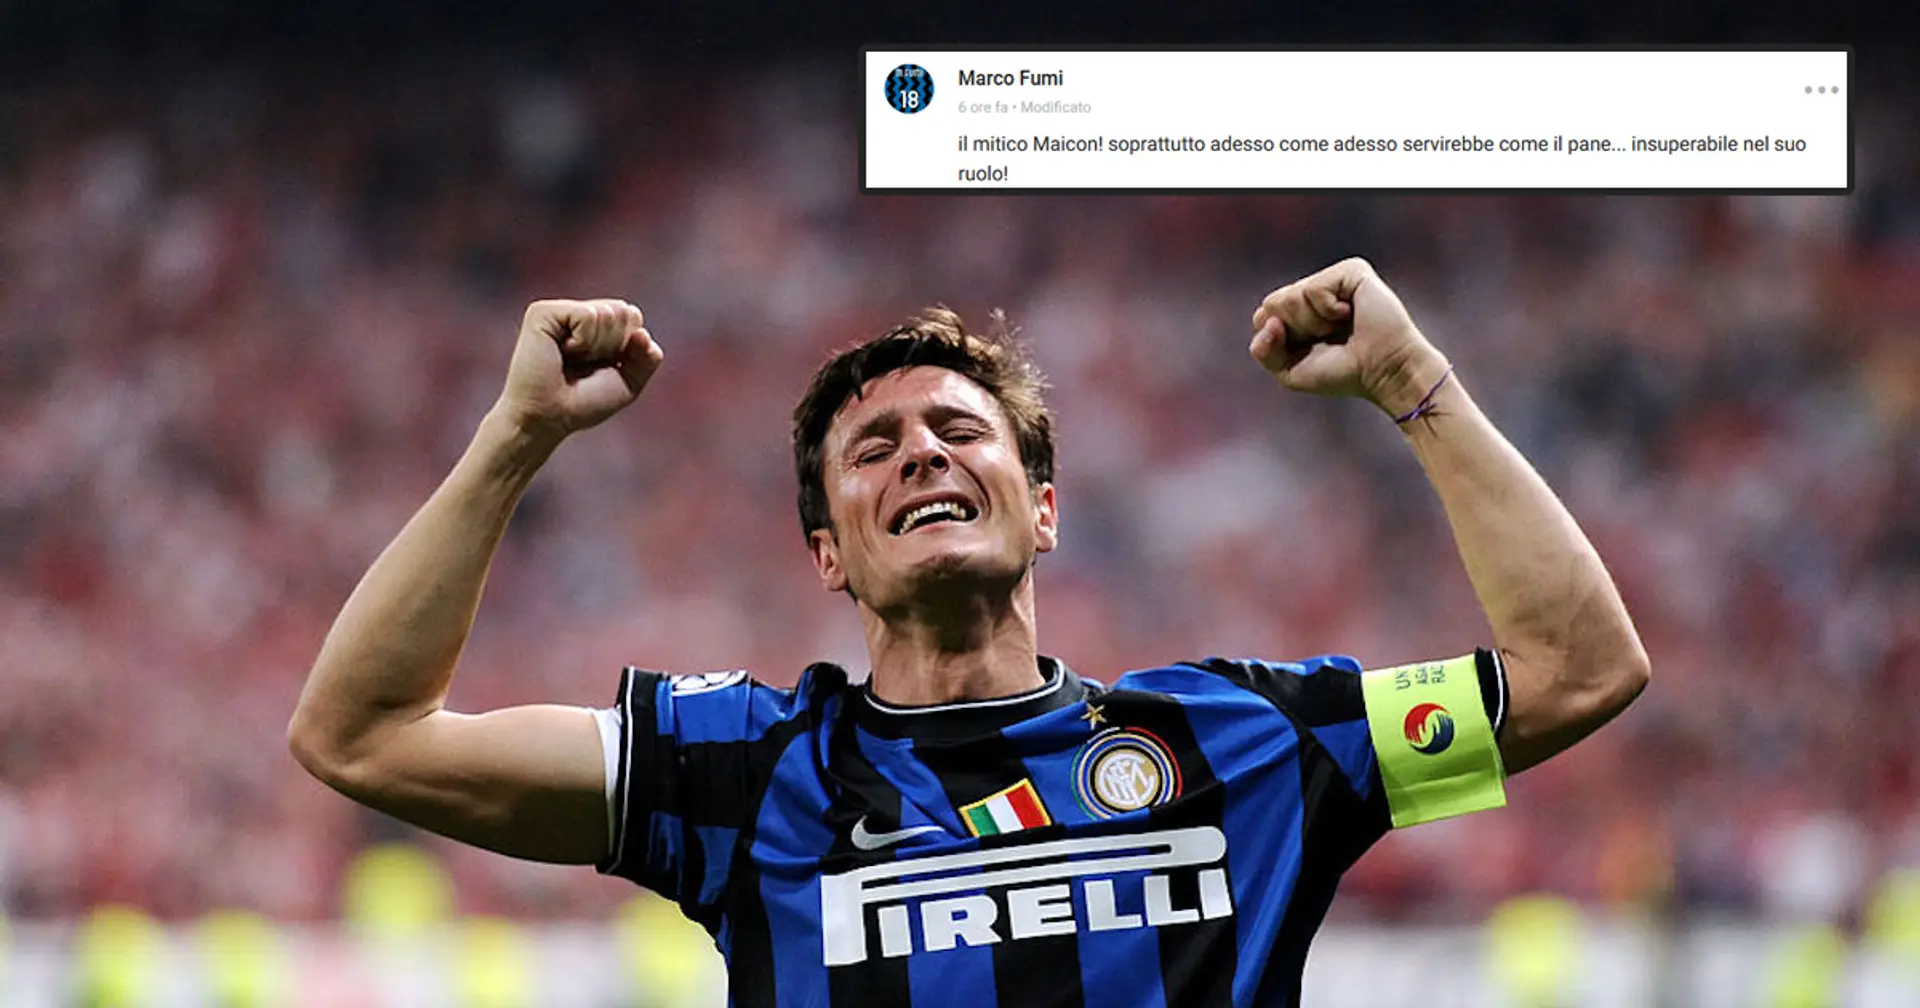 "Zanetti sicuro, ma un altro ci servirebbe come il pane!": i tifosi dell'Inter svelano chi vorrebbero ancora in squadra